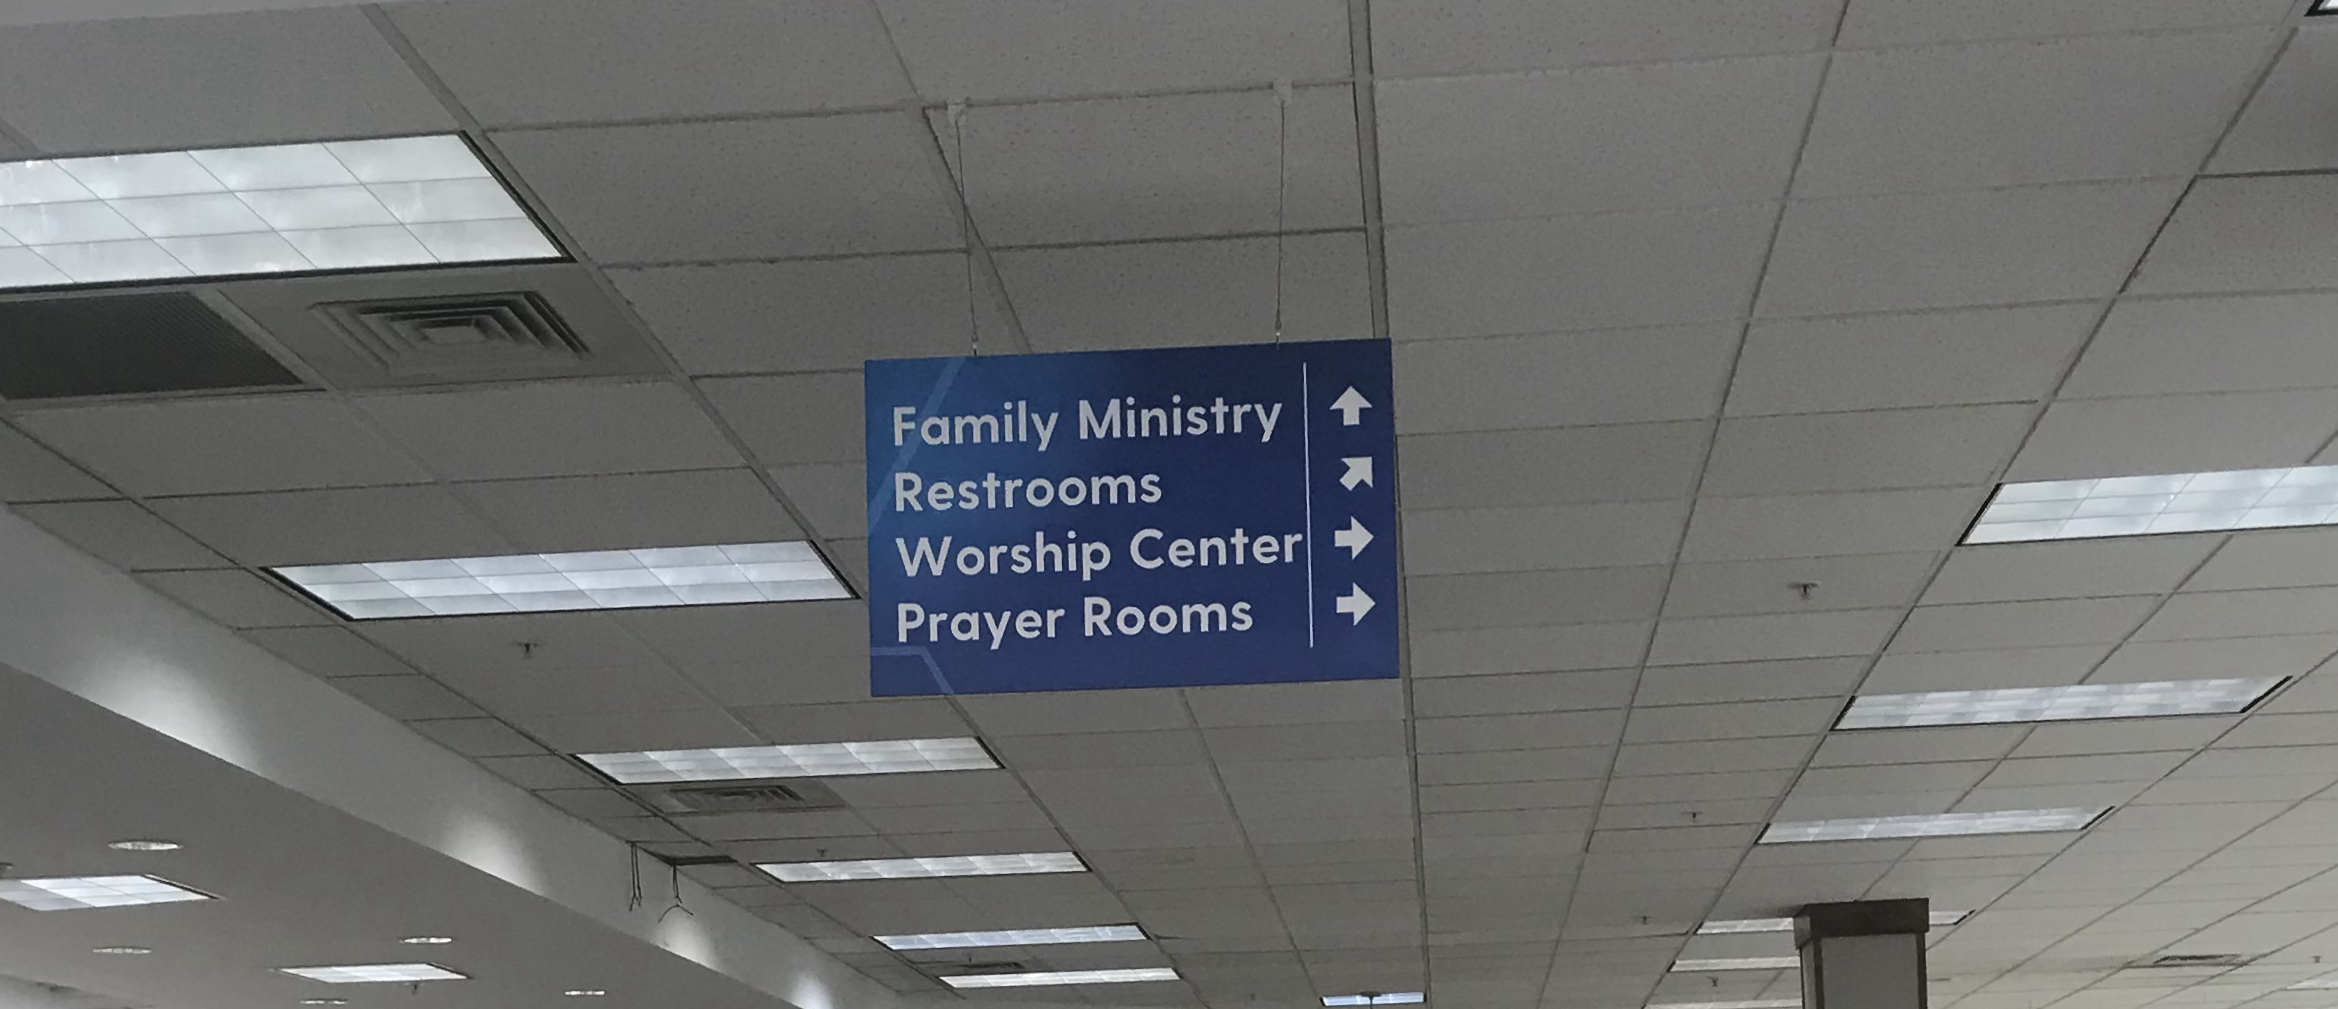 Religious Organization Directional Signage